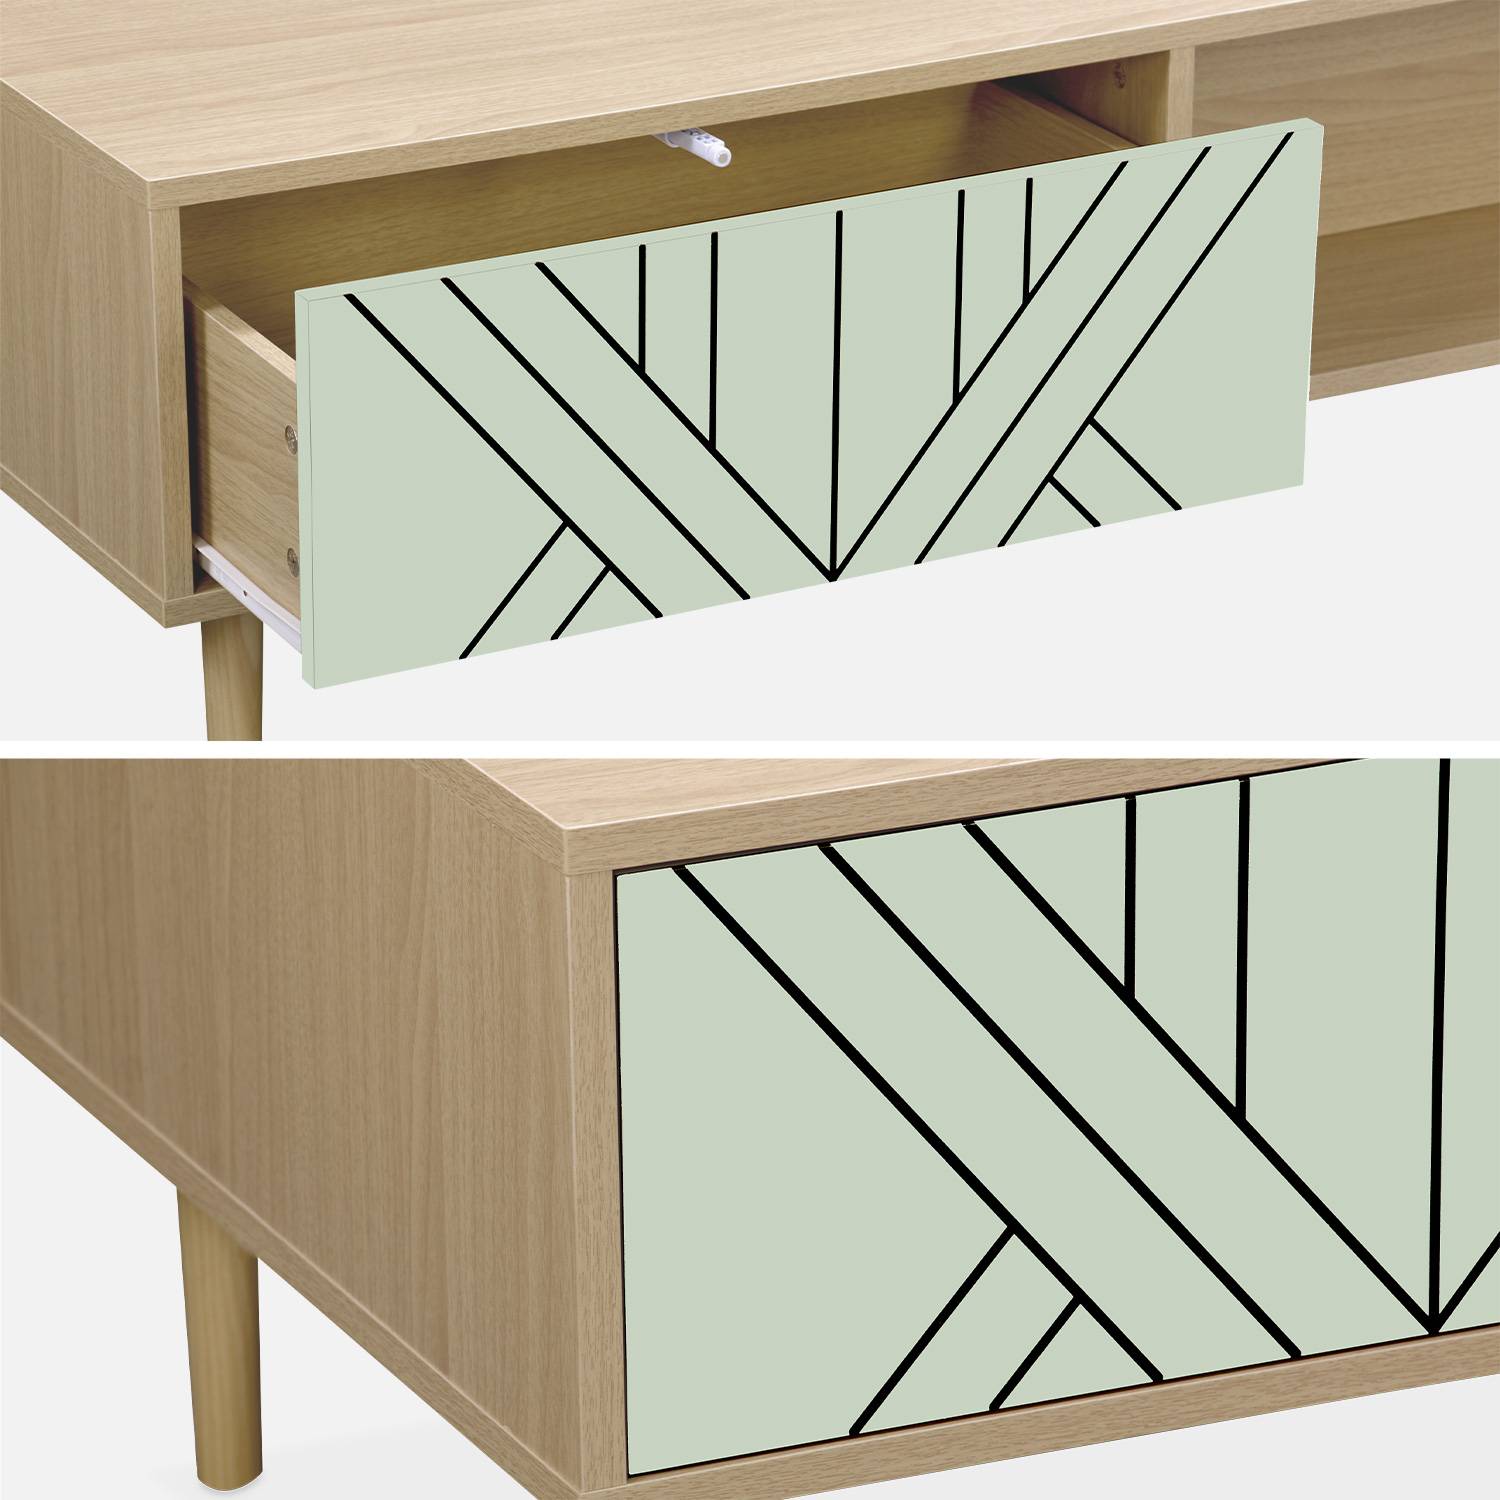 Tavolino in legno e verde acqua - Mika - 2 cassetti, 2 vani portaoggetti, L 120 x L 55 x H 40cm,sweeek,Photo5